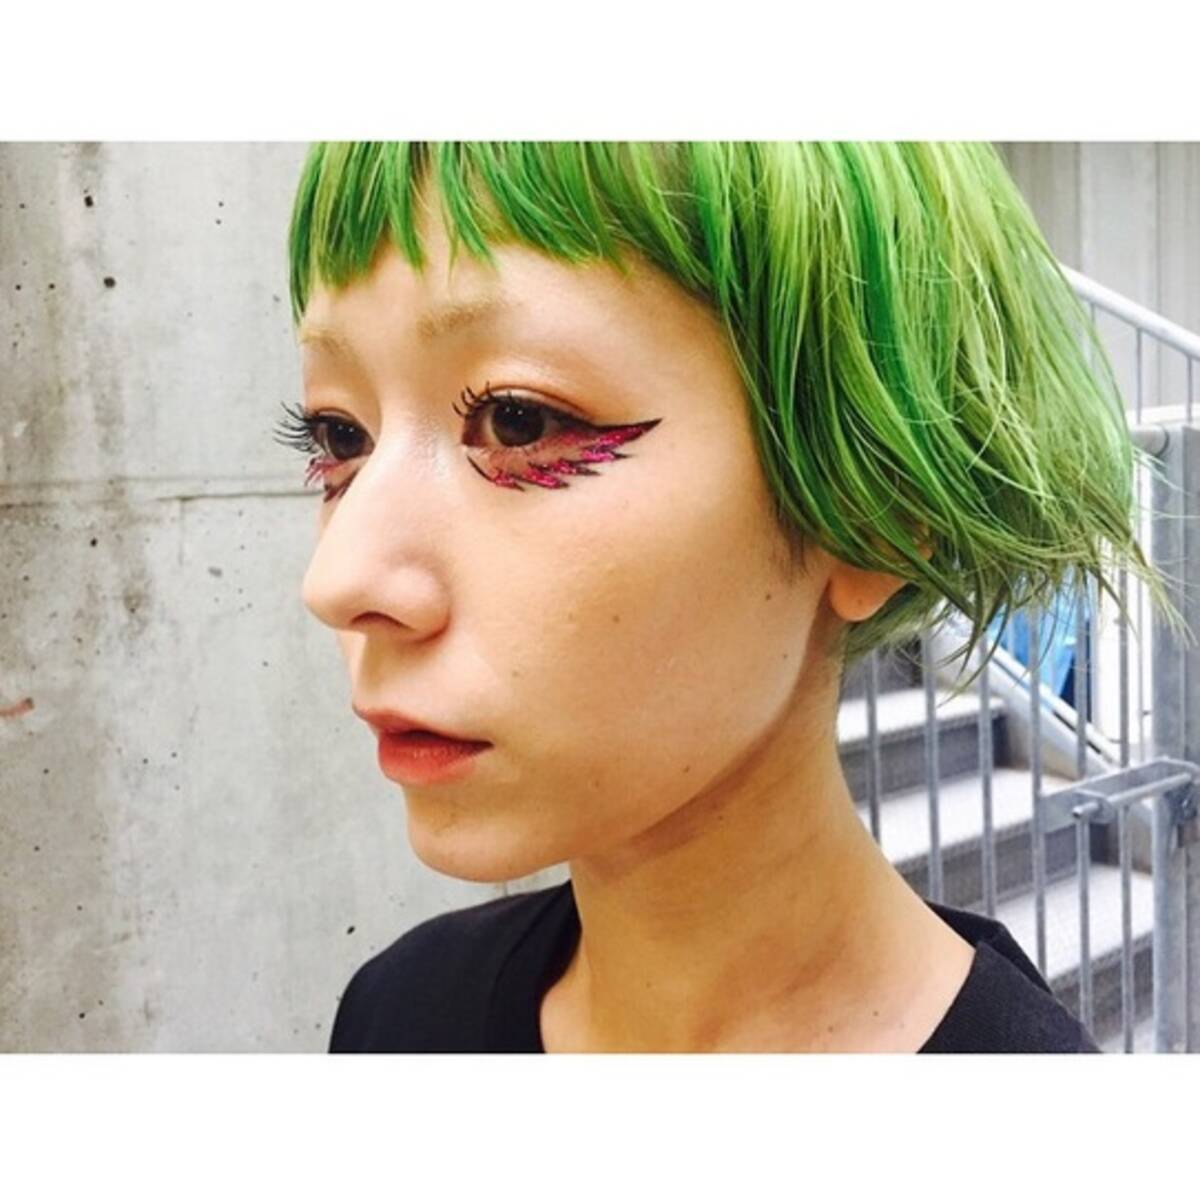 木村カエラ 個性的なヘアカラーは セルフで実施 緑色だけど緑は使わない 美容師顔負けの技術に驚き 15年4月14日 エキサイトニュース